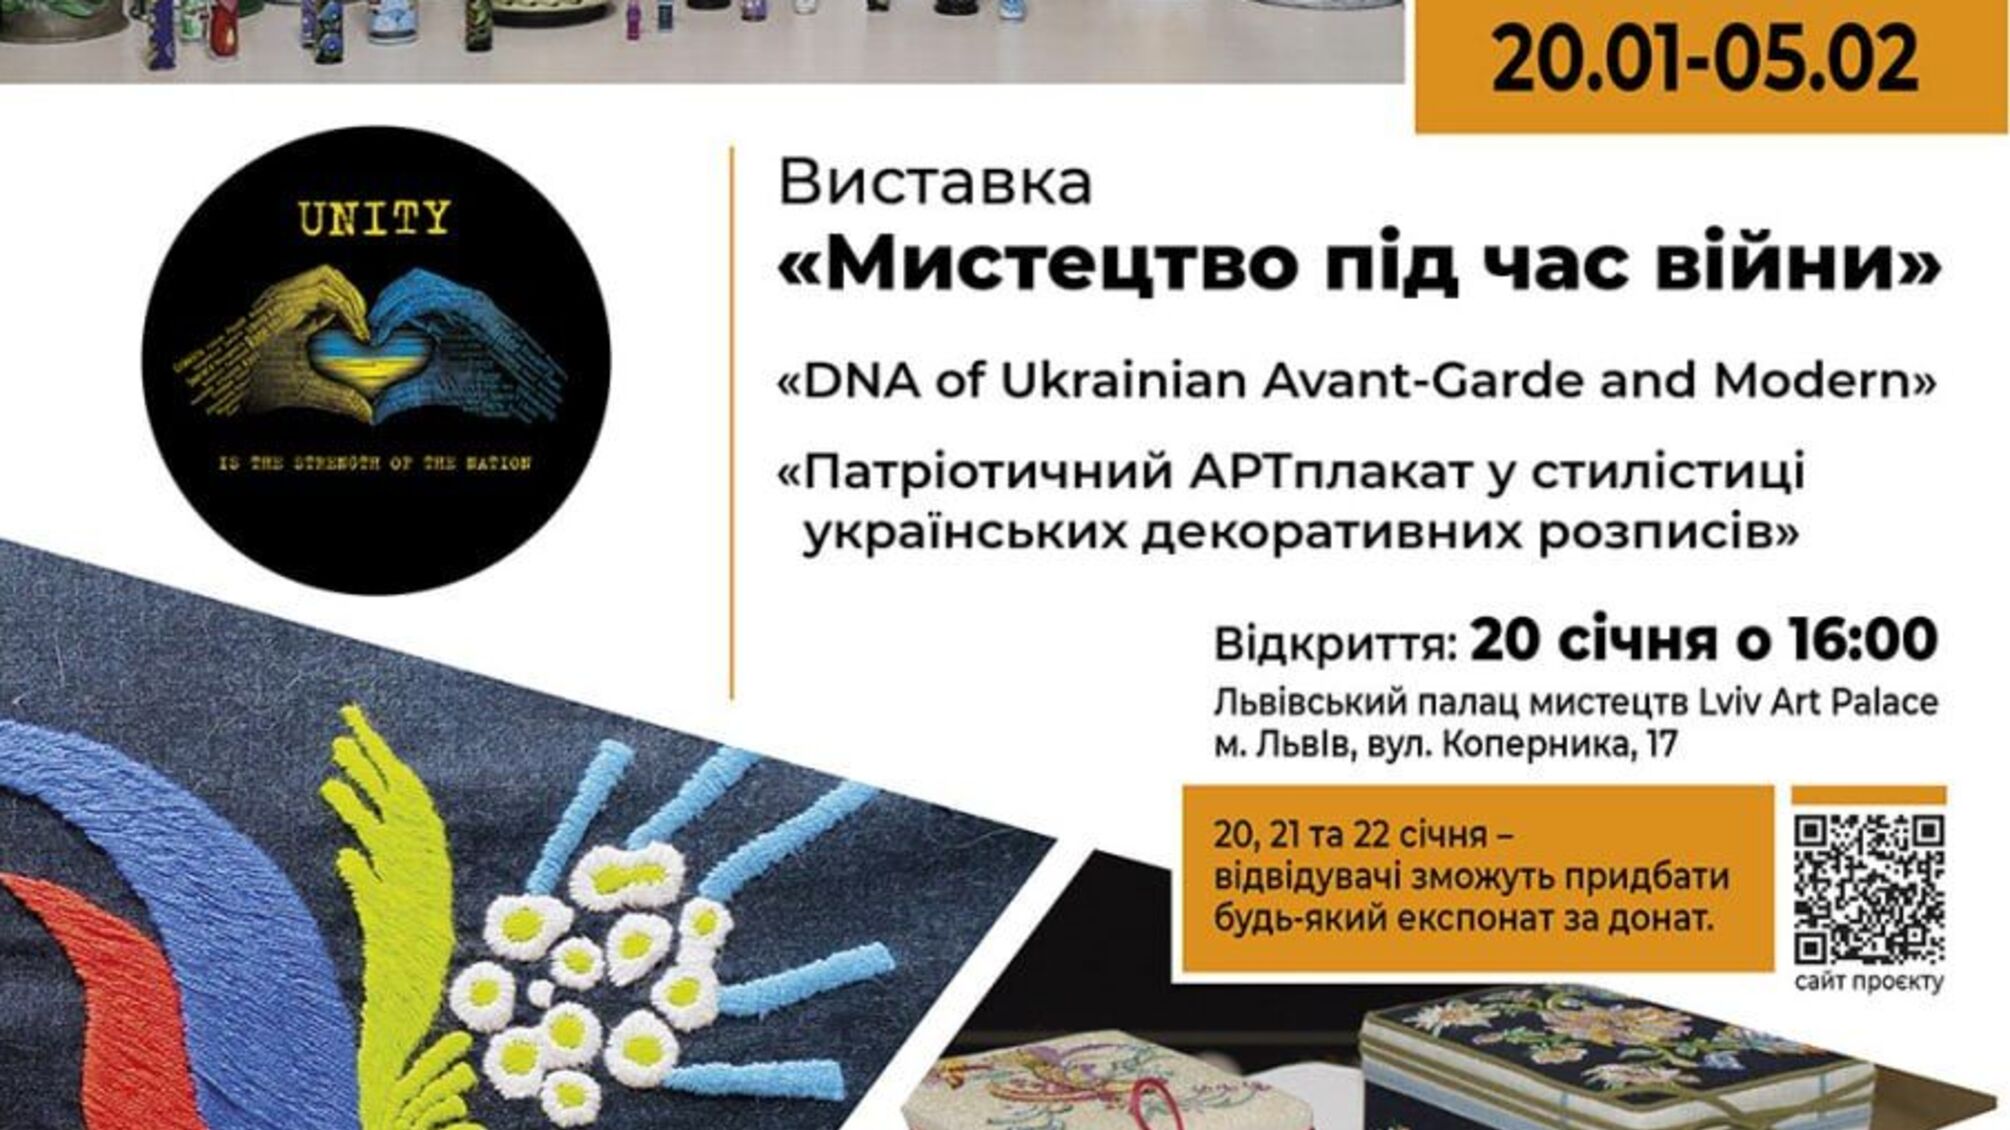 Мистецтво під час війни: у Львові відкривається благодійна виставка українських митців